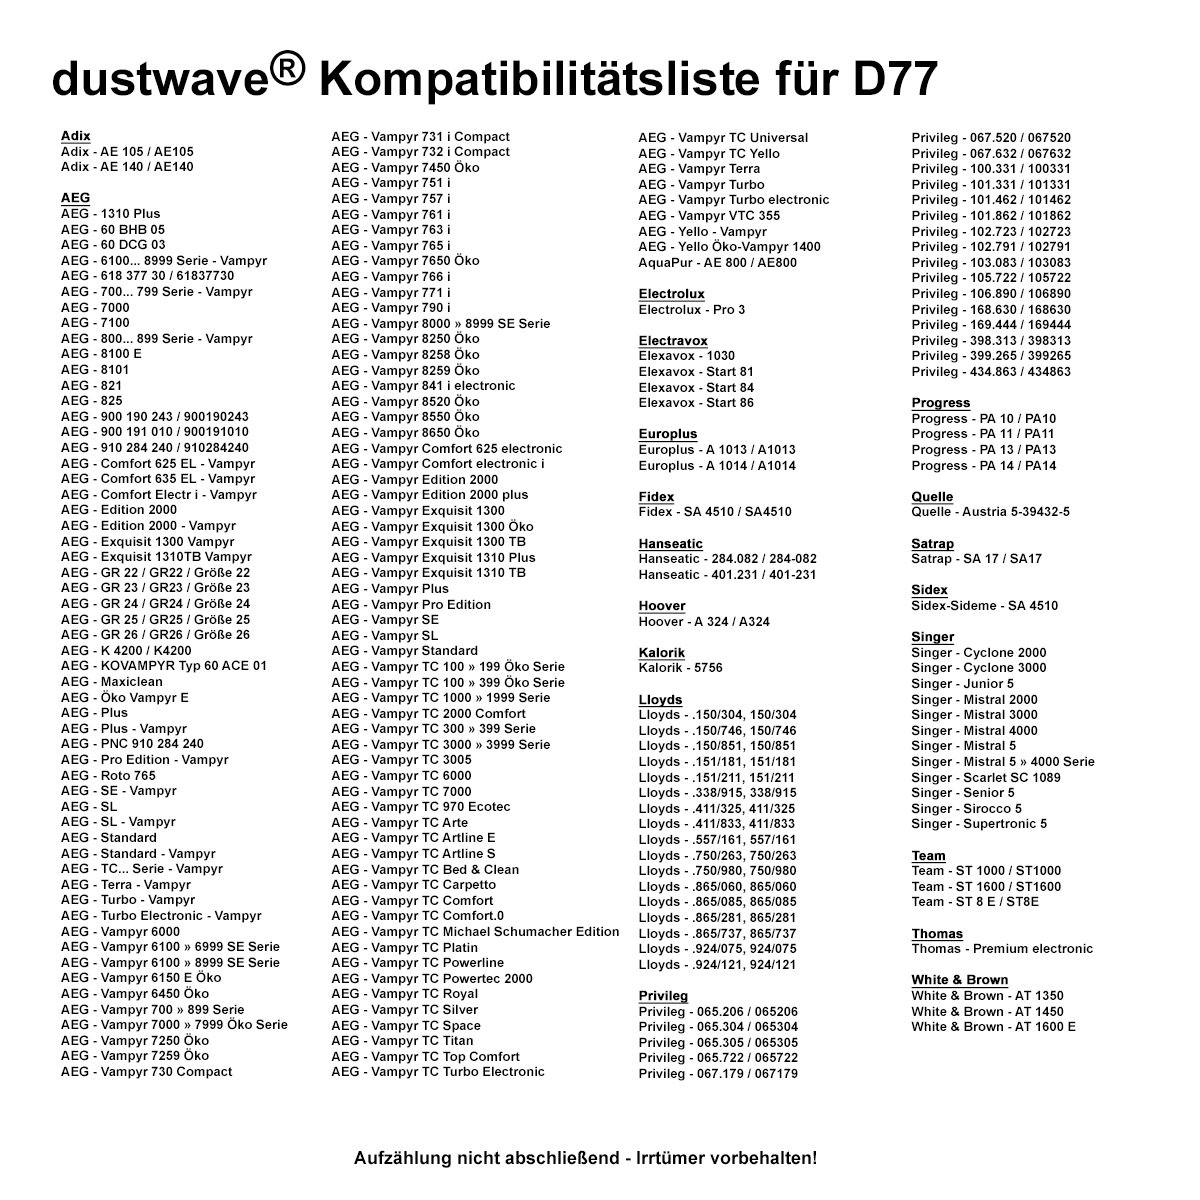 Dustwave® 10 Staubsaugerbeutel für AEG Vampyr TC Powerline - hocheffizient, mehrlagiges Mikrovlies mit Hygieneverschluss - Made in Germany